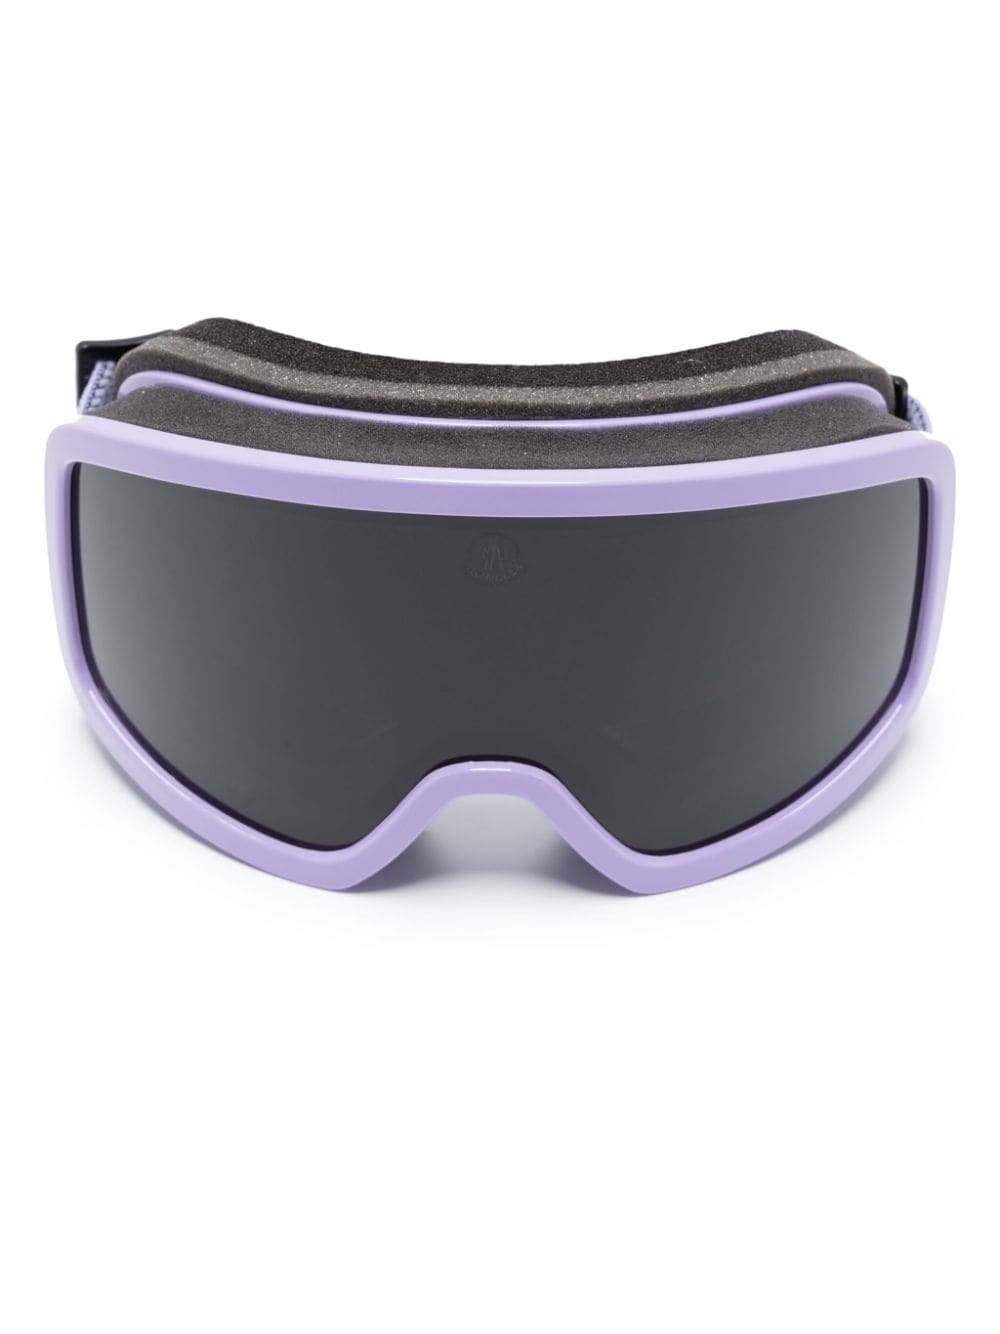 Moncler Eyewear Terrabeam Skibrille - Violett von Moncler Eyewear